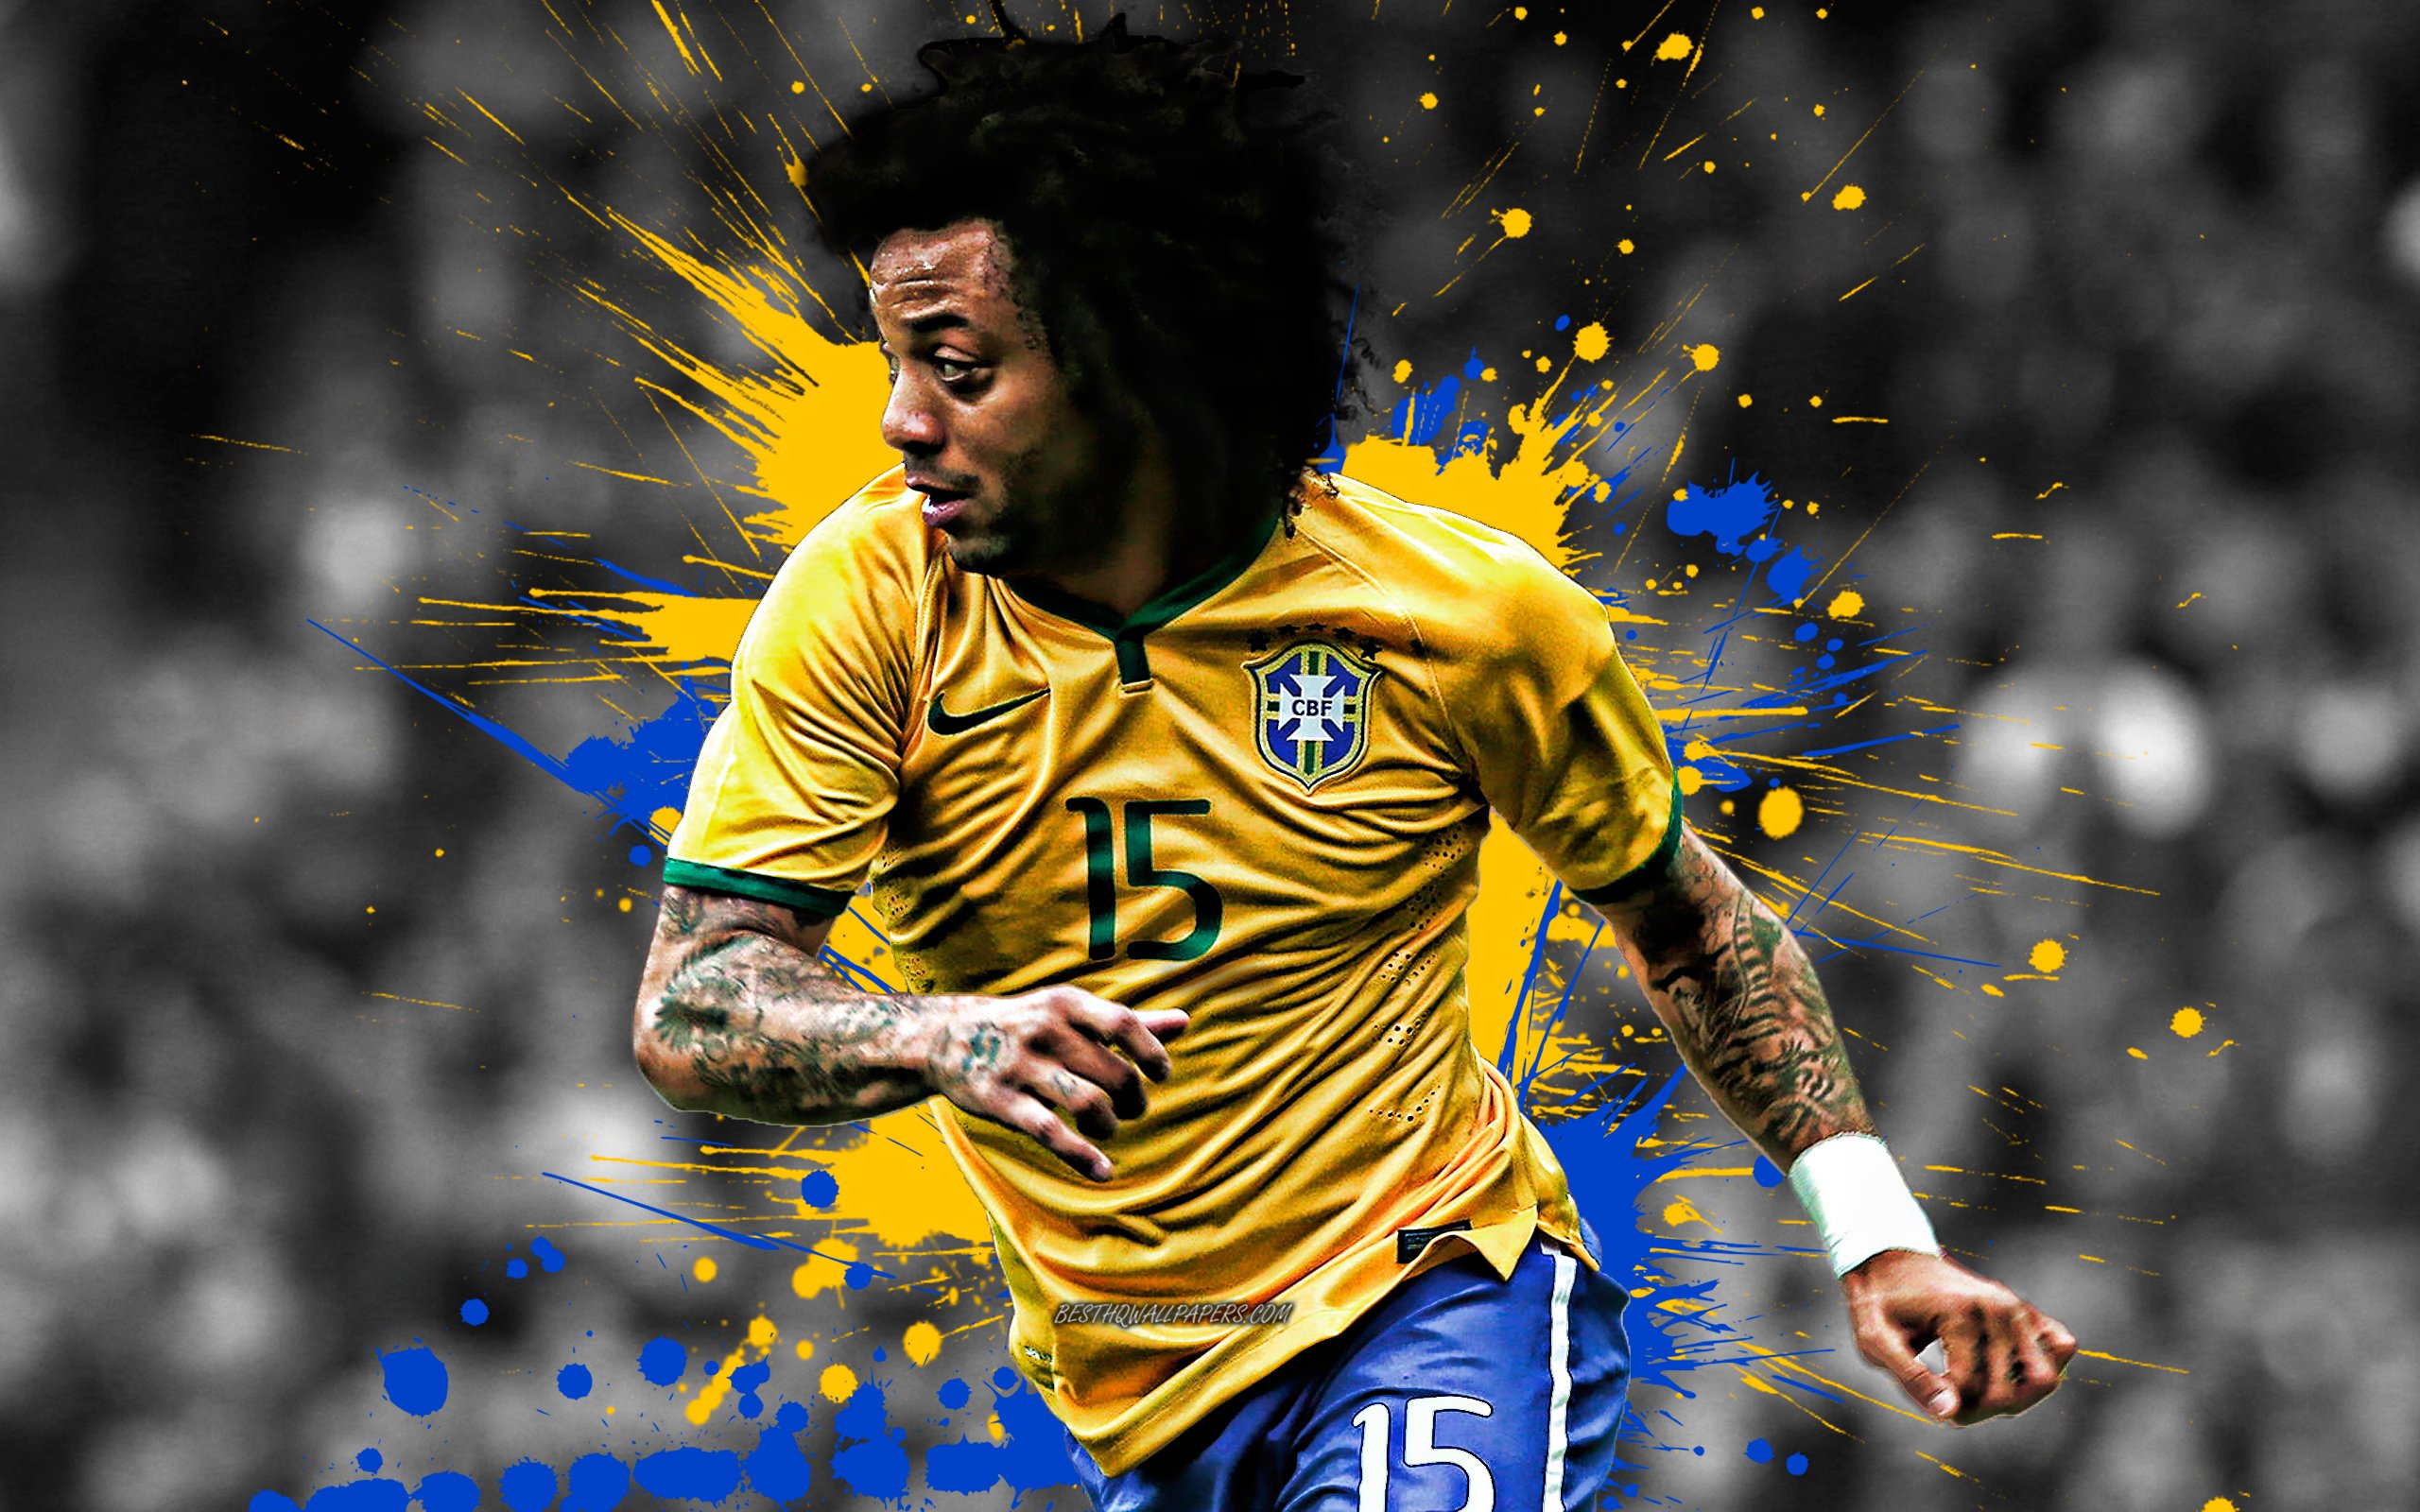 ダウンロード画像 マルセロ ブラジル国サッカーチーム 肖像 車椅子サッカーワールドカップブラジル Df 黄 青の水しぶき よちよち塗装 クリエイティブ アート ブラジル サッカー マルセロ Vieira 画面の解像度 2560x1600 壁紙デスクトップ上